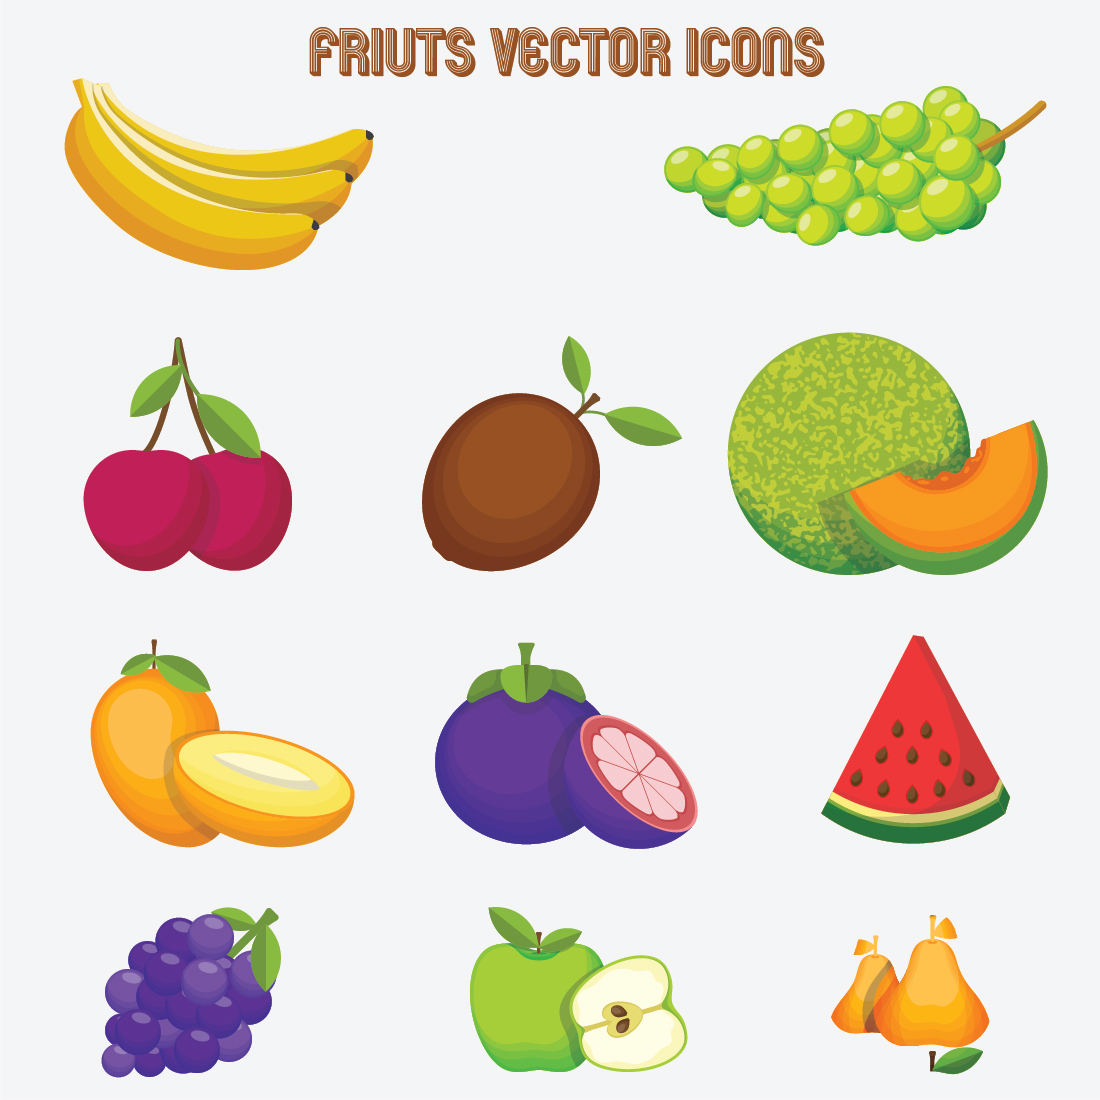 Fruits Vectors Illustrations previews.